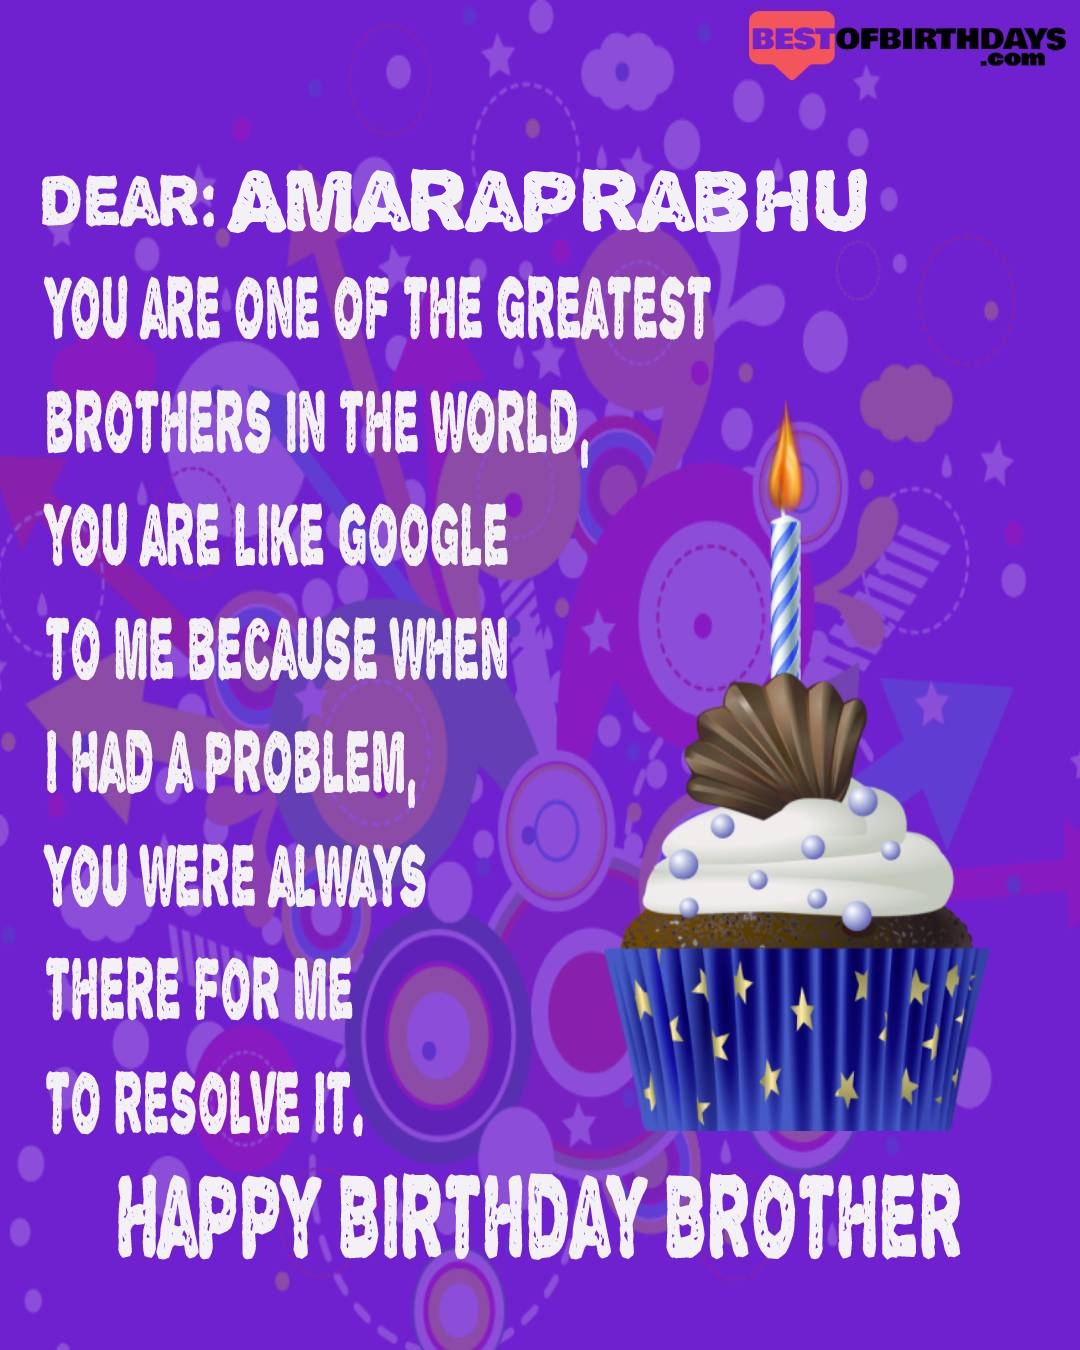 Happy birthday amaraprabhu bhai brother bro